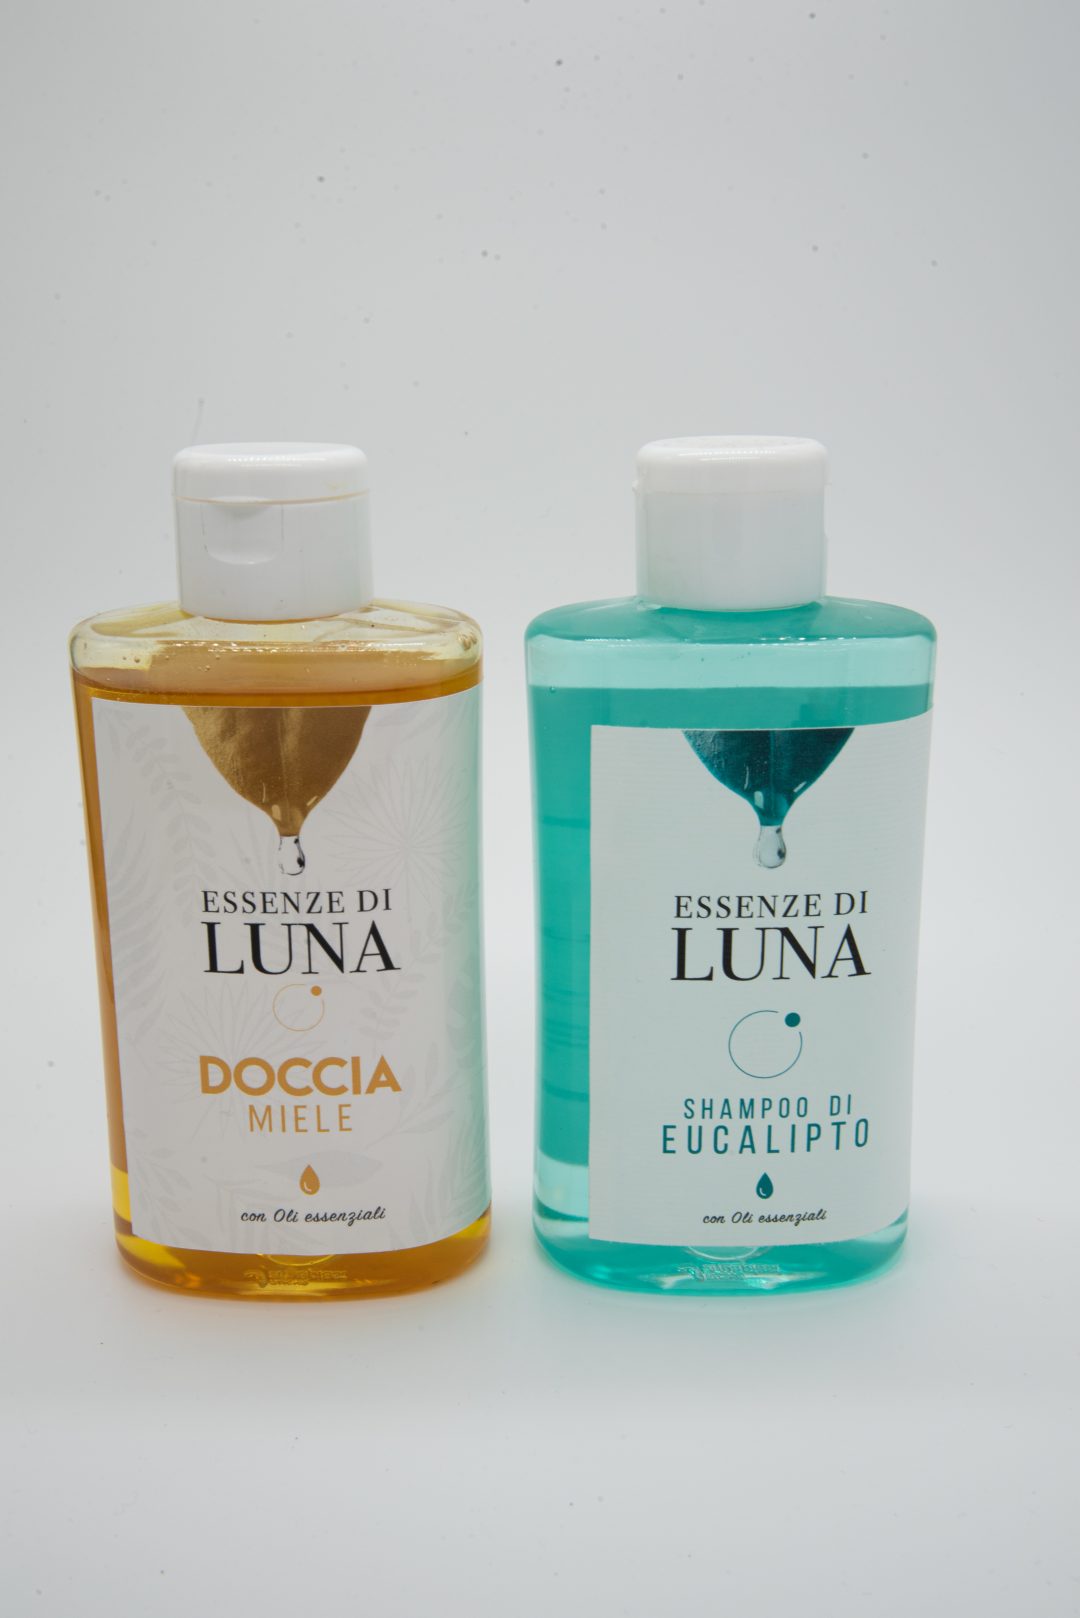 Doccia miele e shampoo Ecualipto